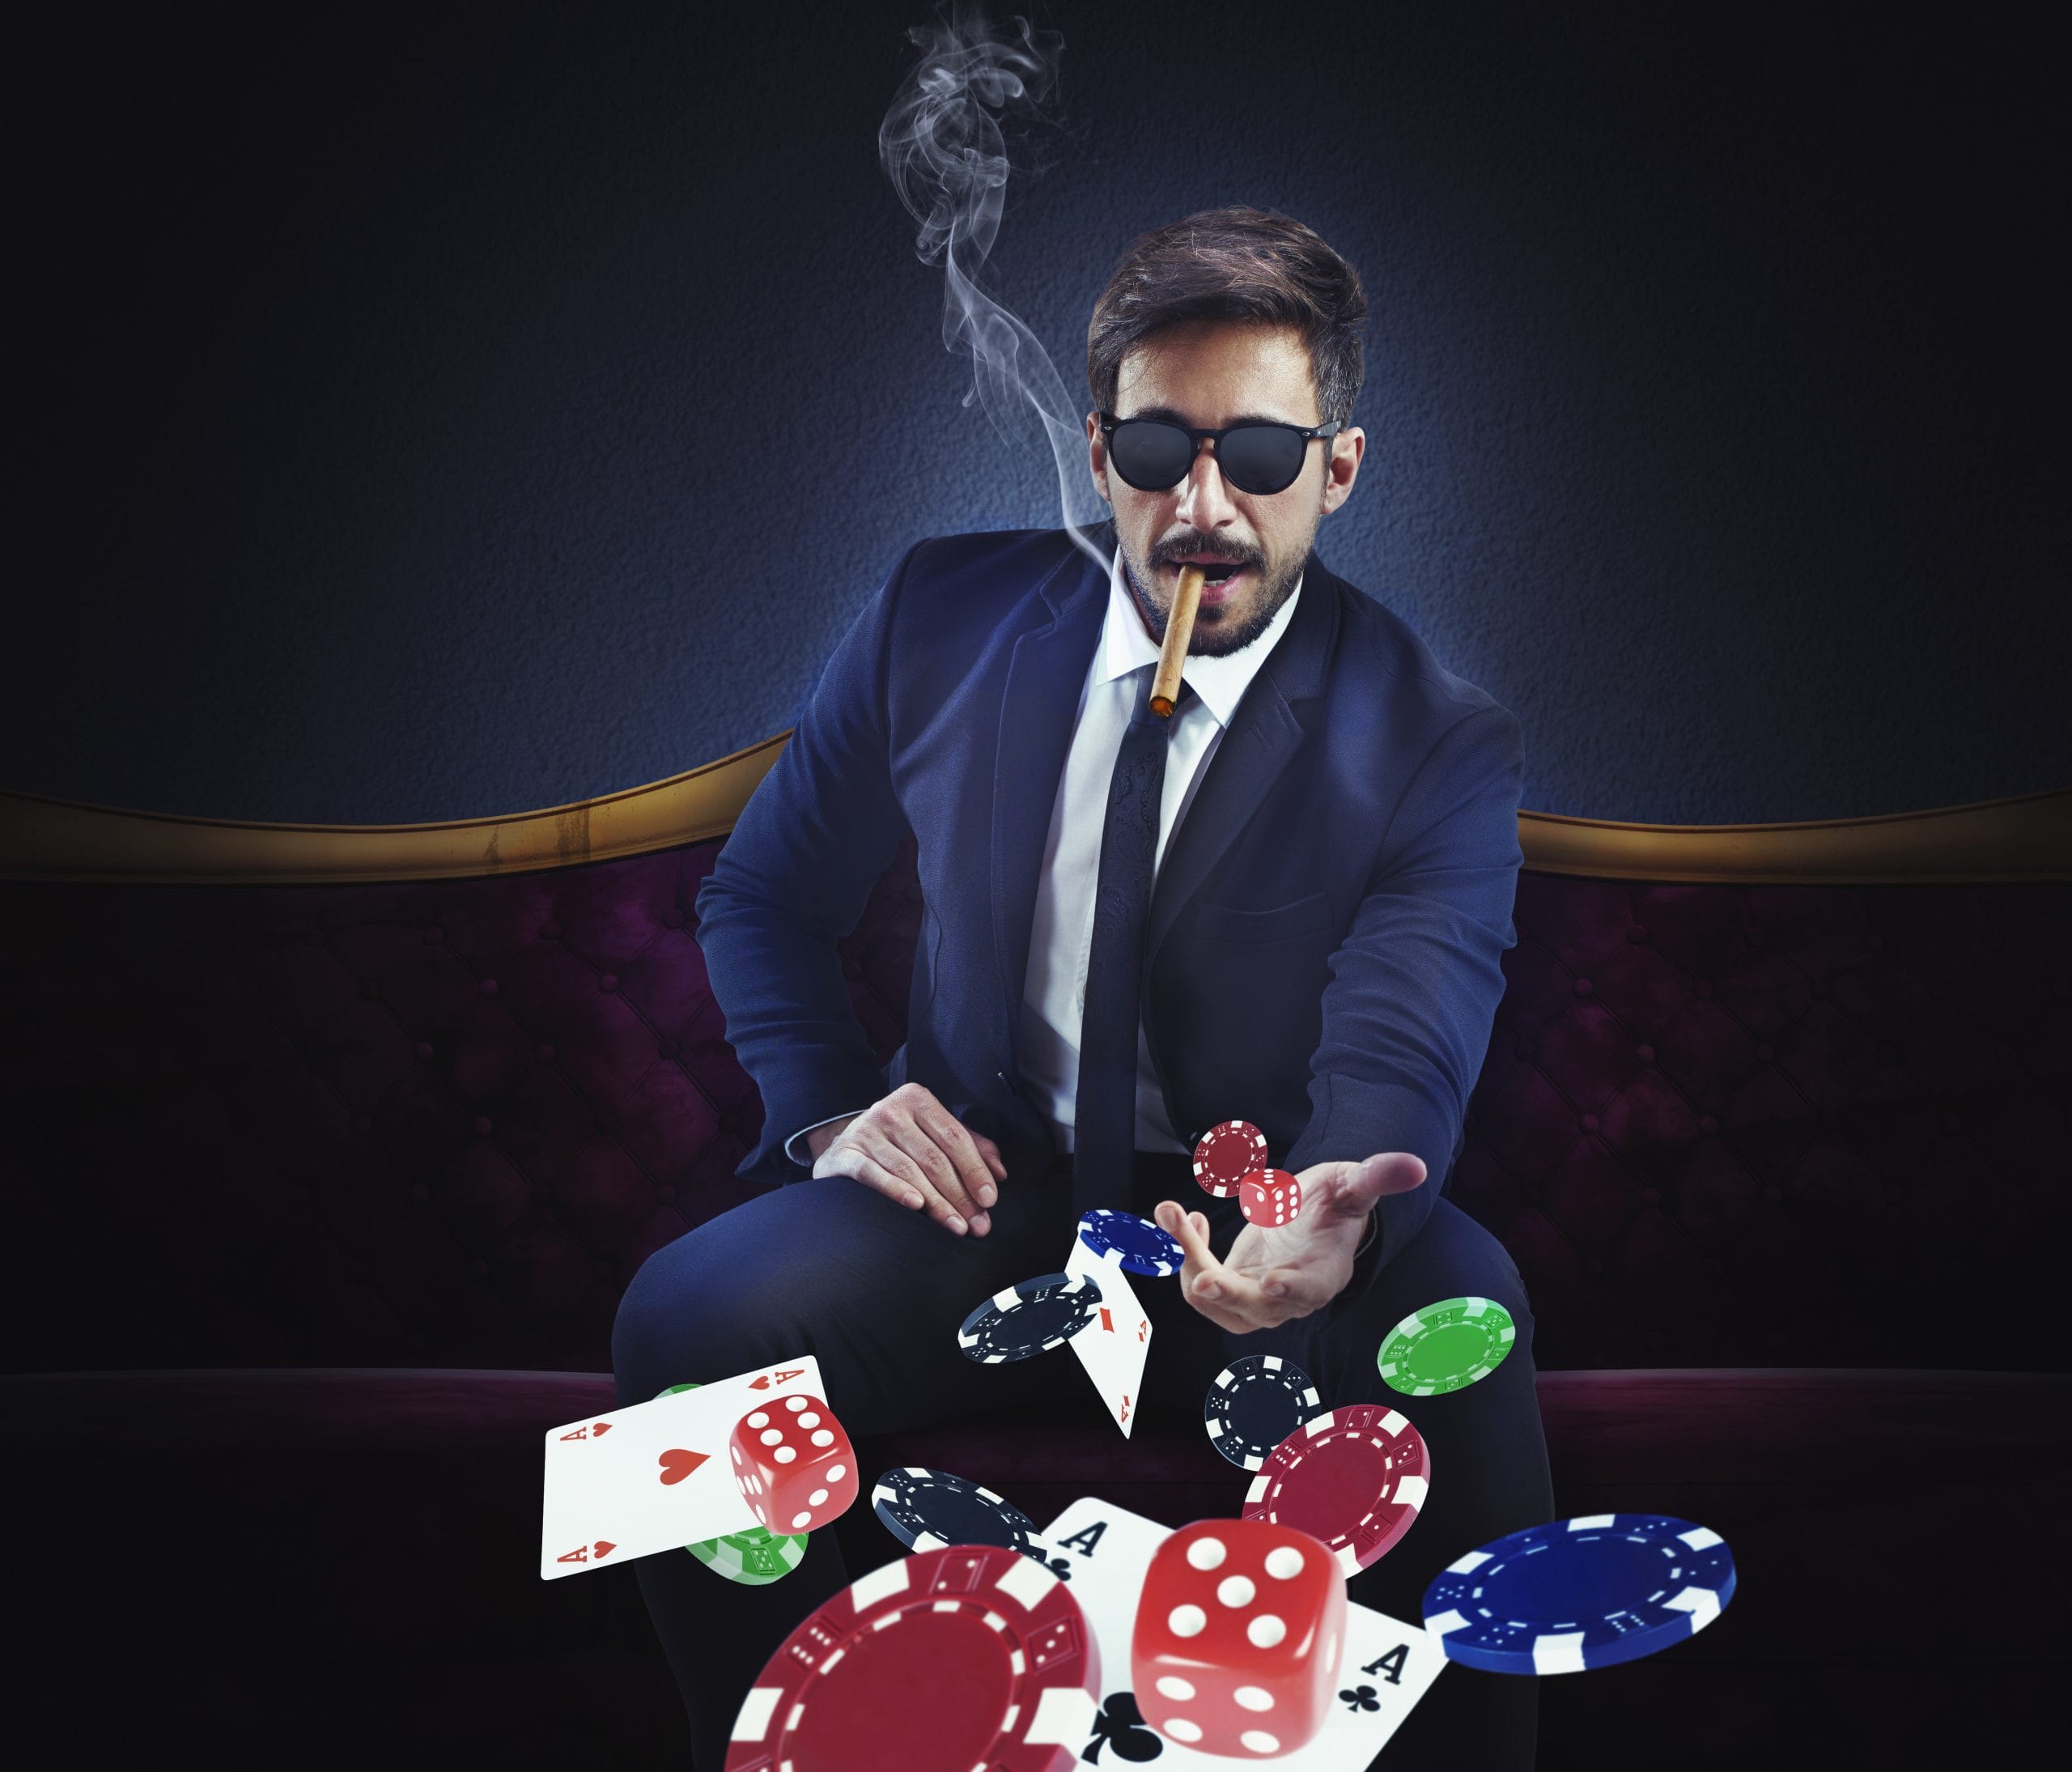 Prečo úspešný hazardný hráč potrebuje zabijacky inštinkt?